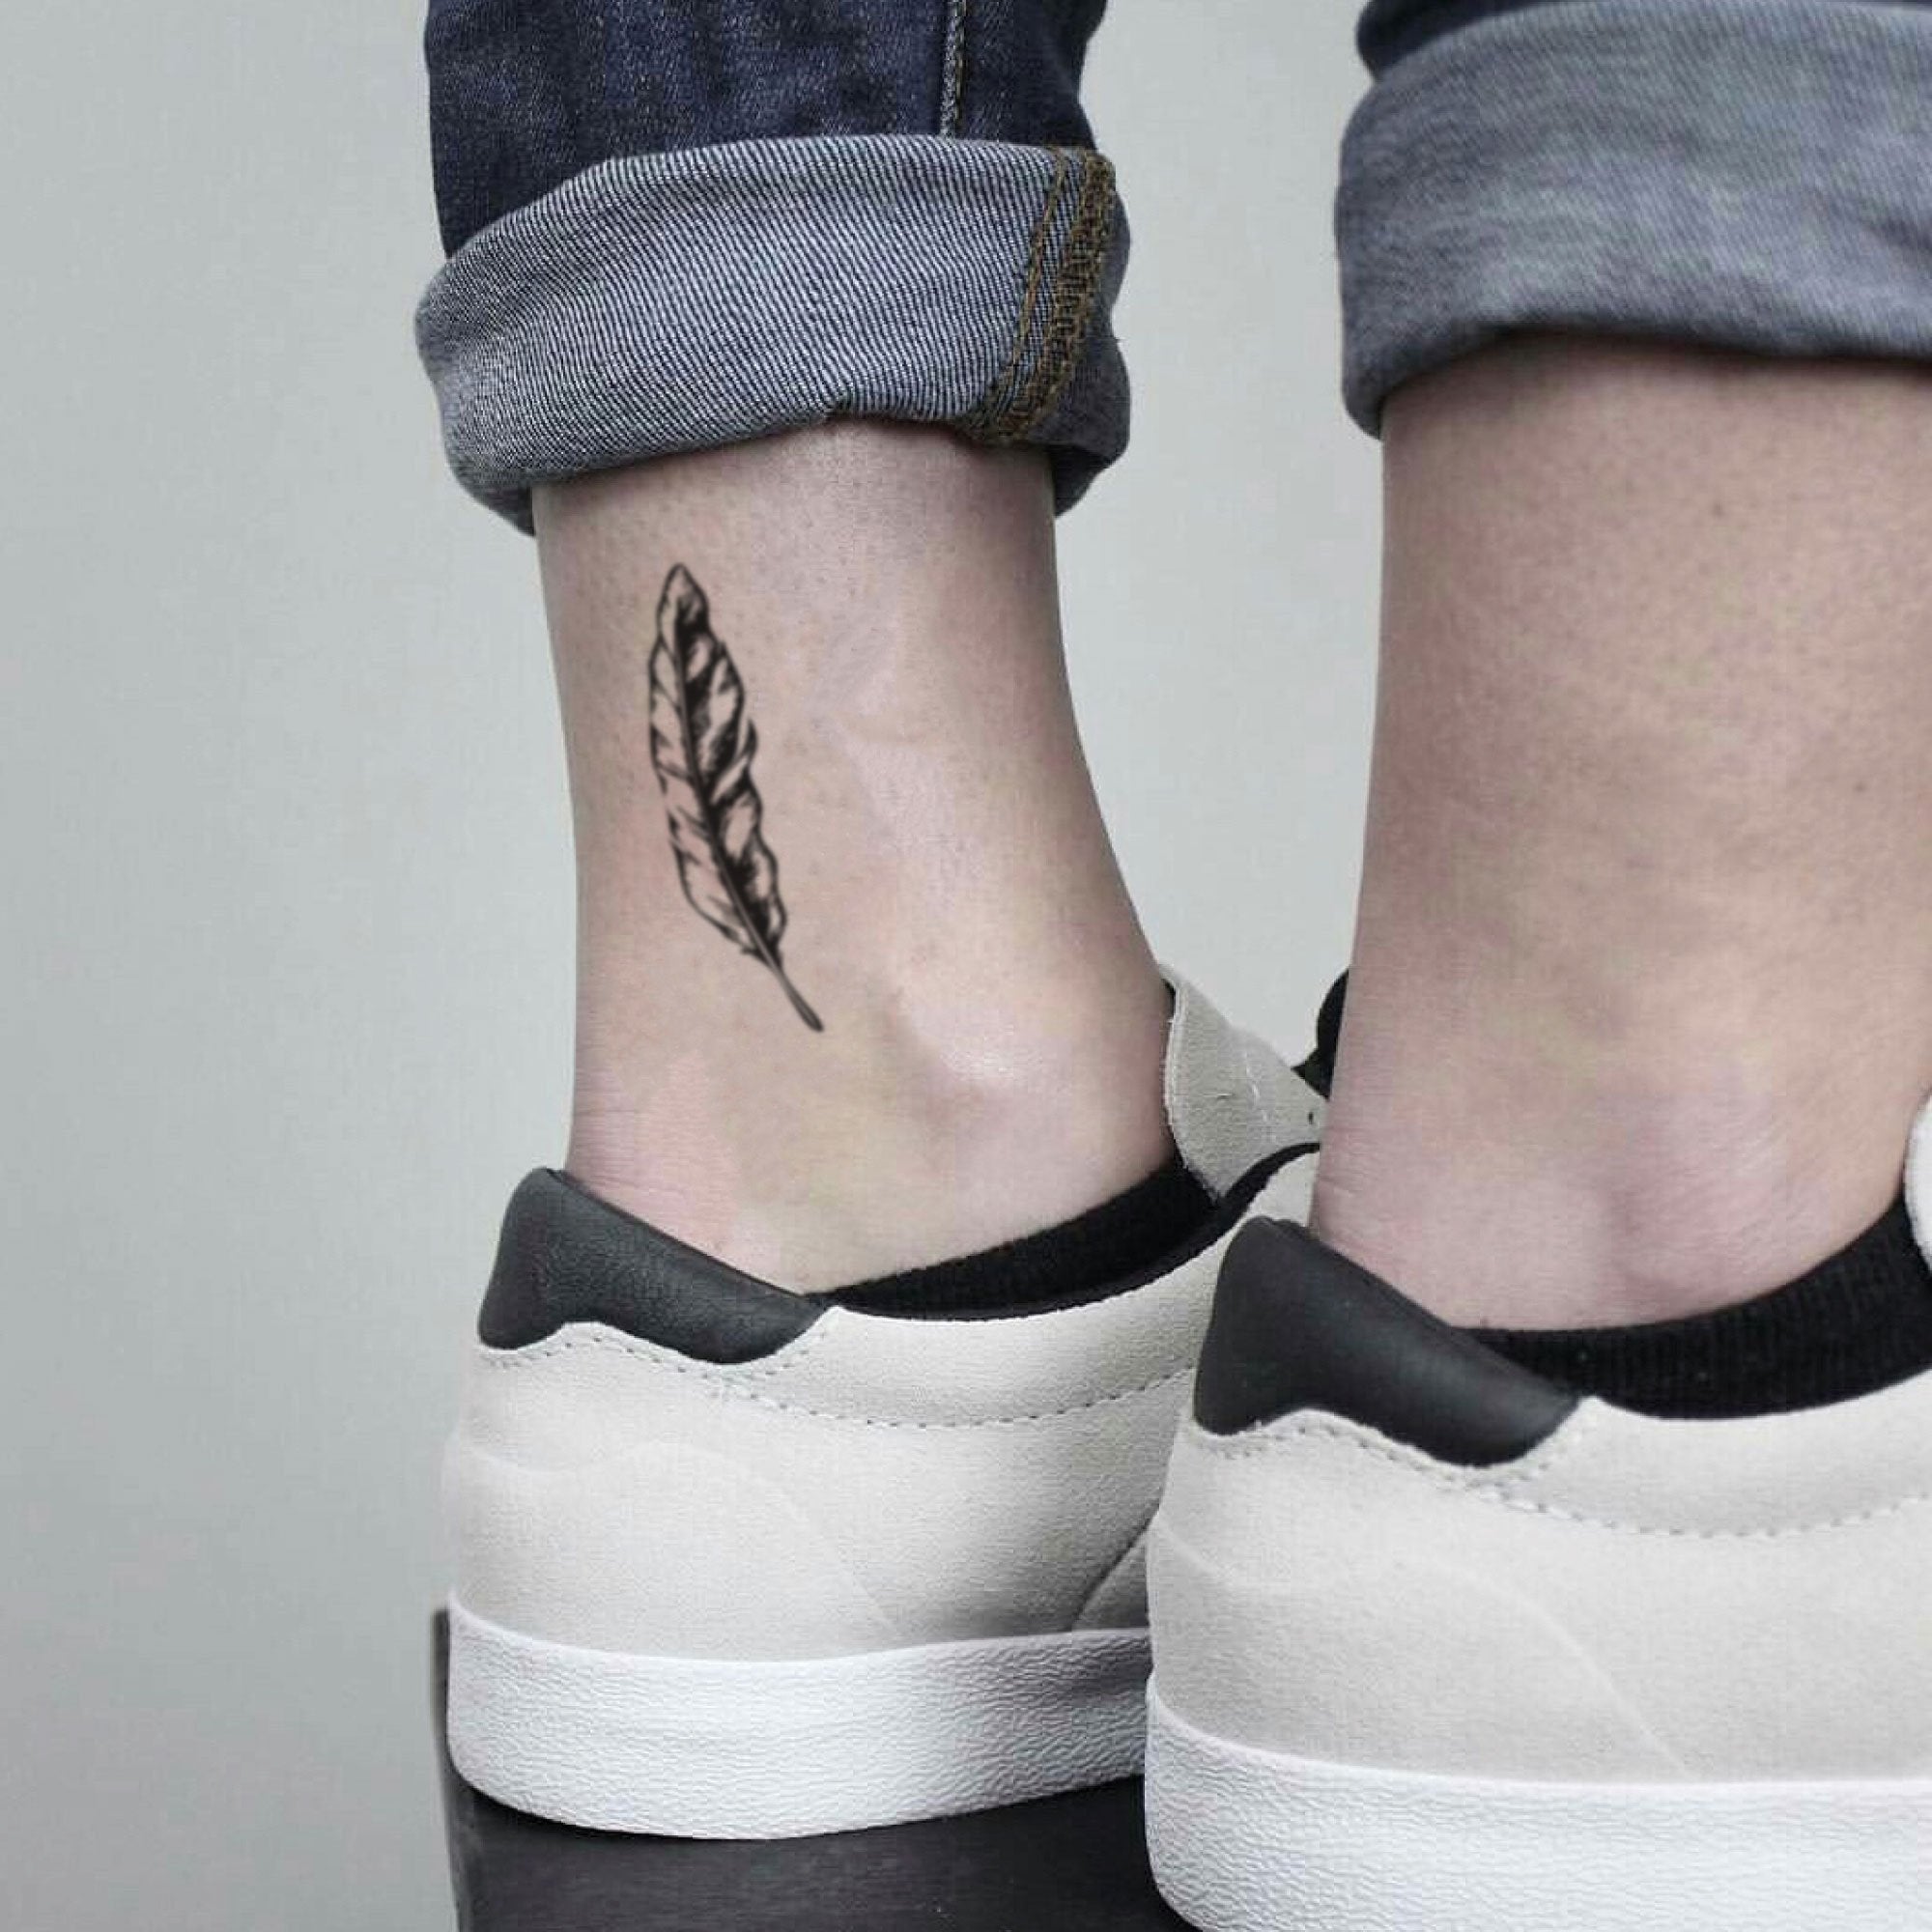 Girl Foot Tattoo / Feather tattoo / #artist #nachhattartattooss #tattoo -  YouTube